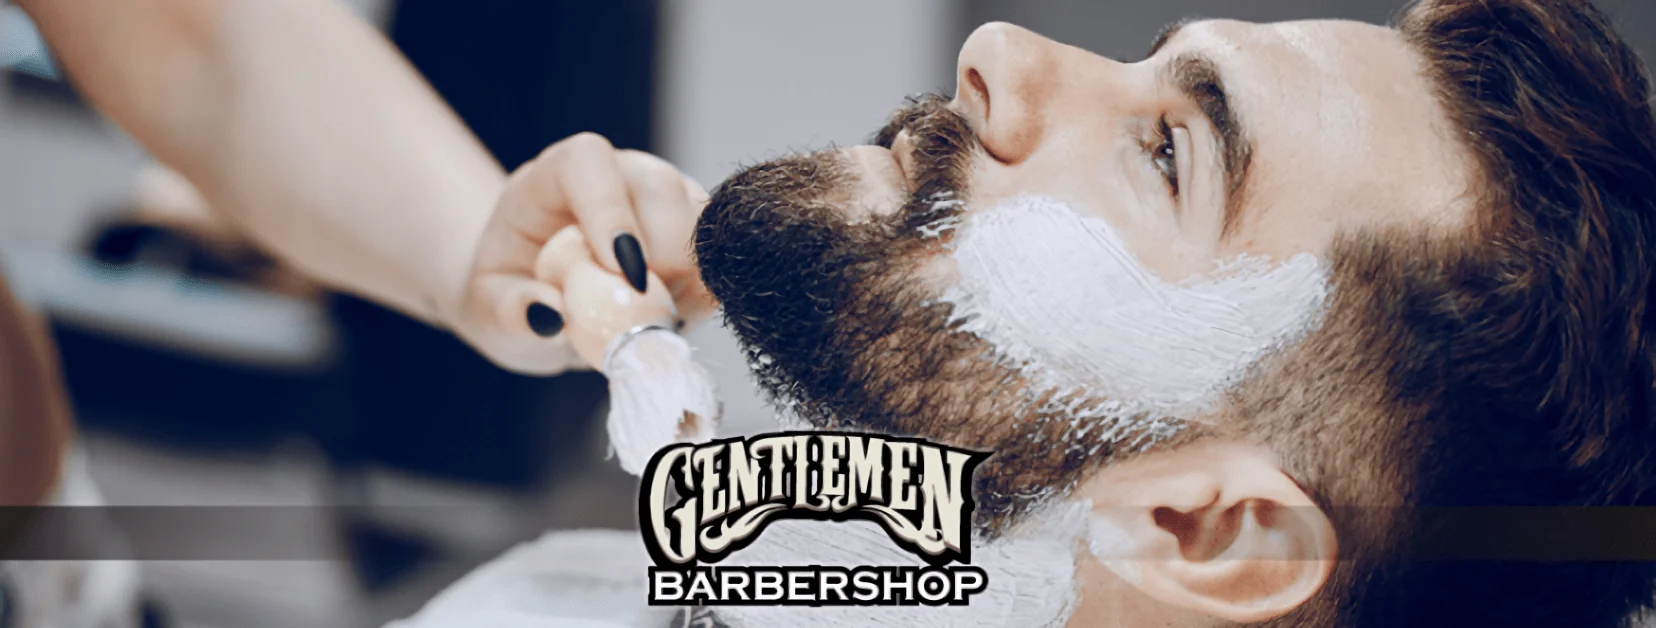 Gentlemen Barbershop by Red Line-650